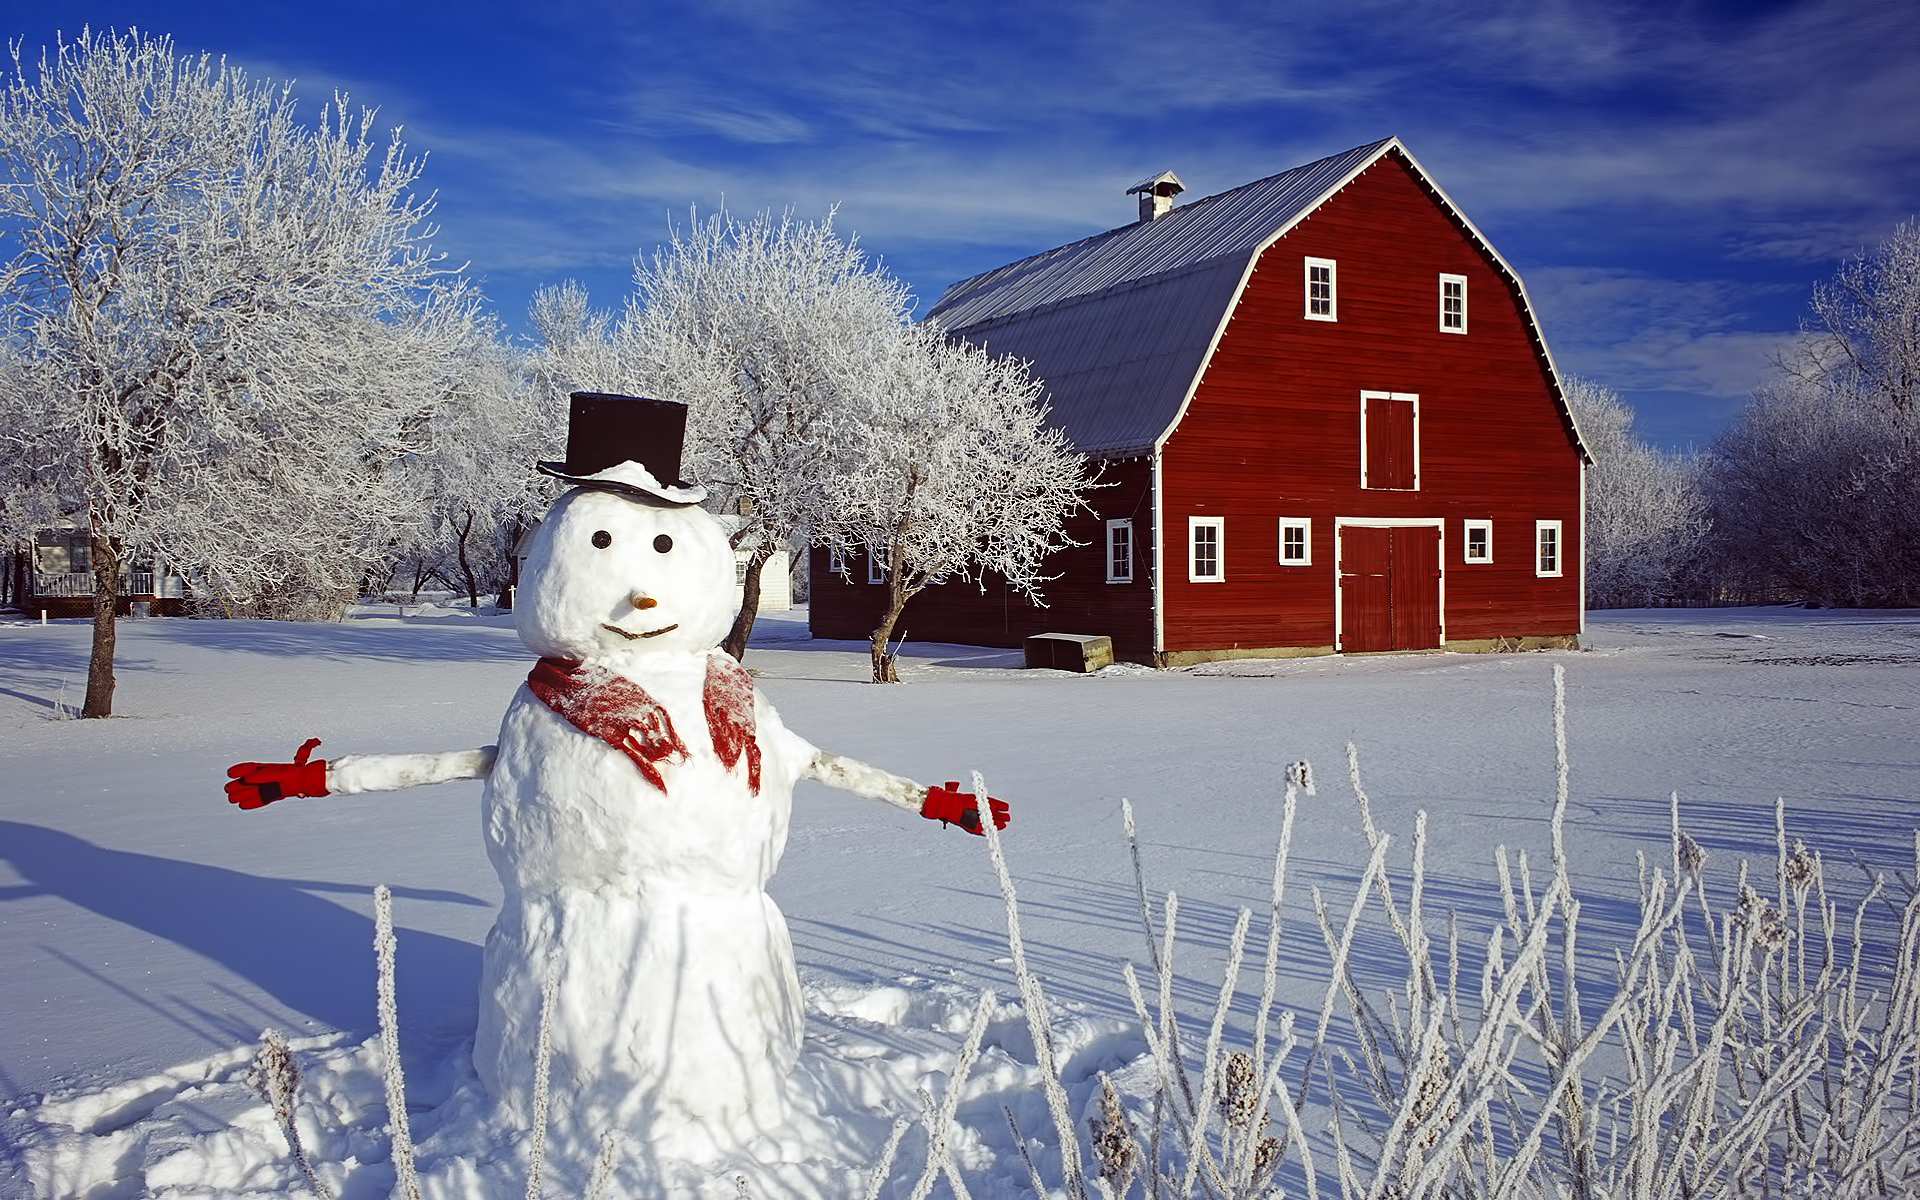 Скачать обои бесплатно Снеговики, Зима, Пейзаж картинка на рабочий стол ПК